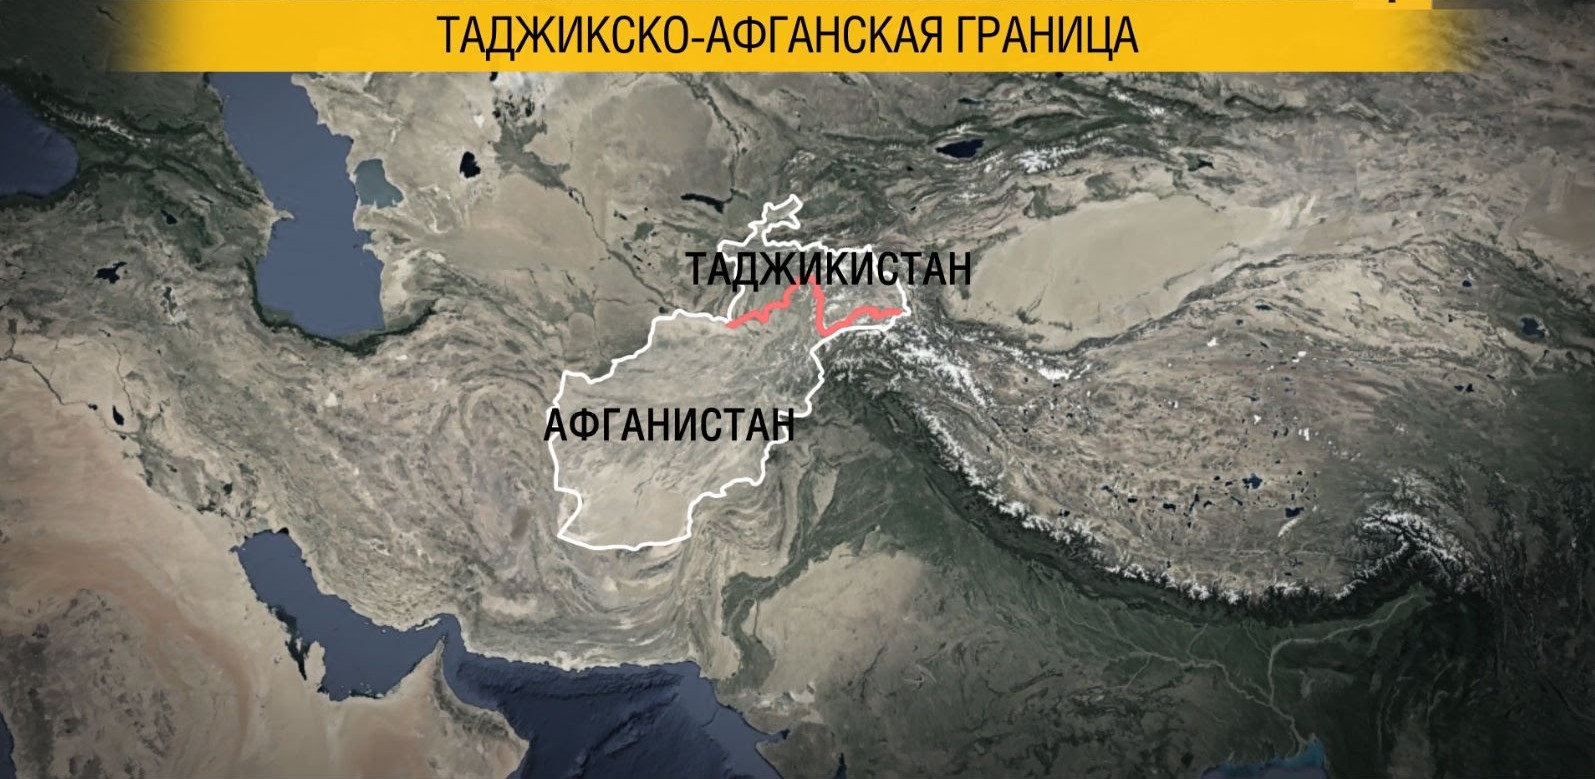 Китай поможет усилить таджикско-афганскую границу. Чего он боится?